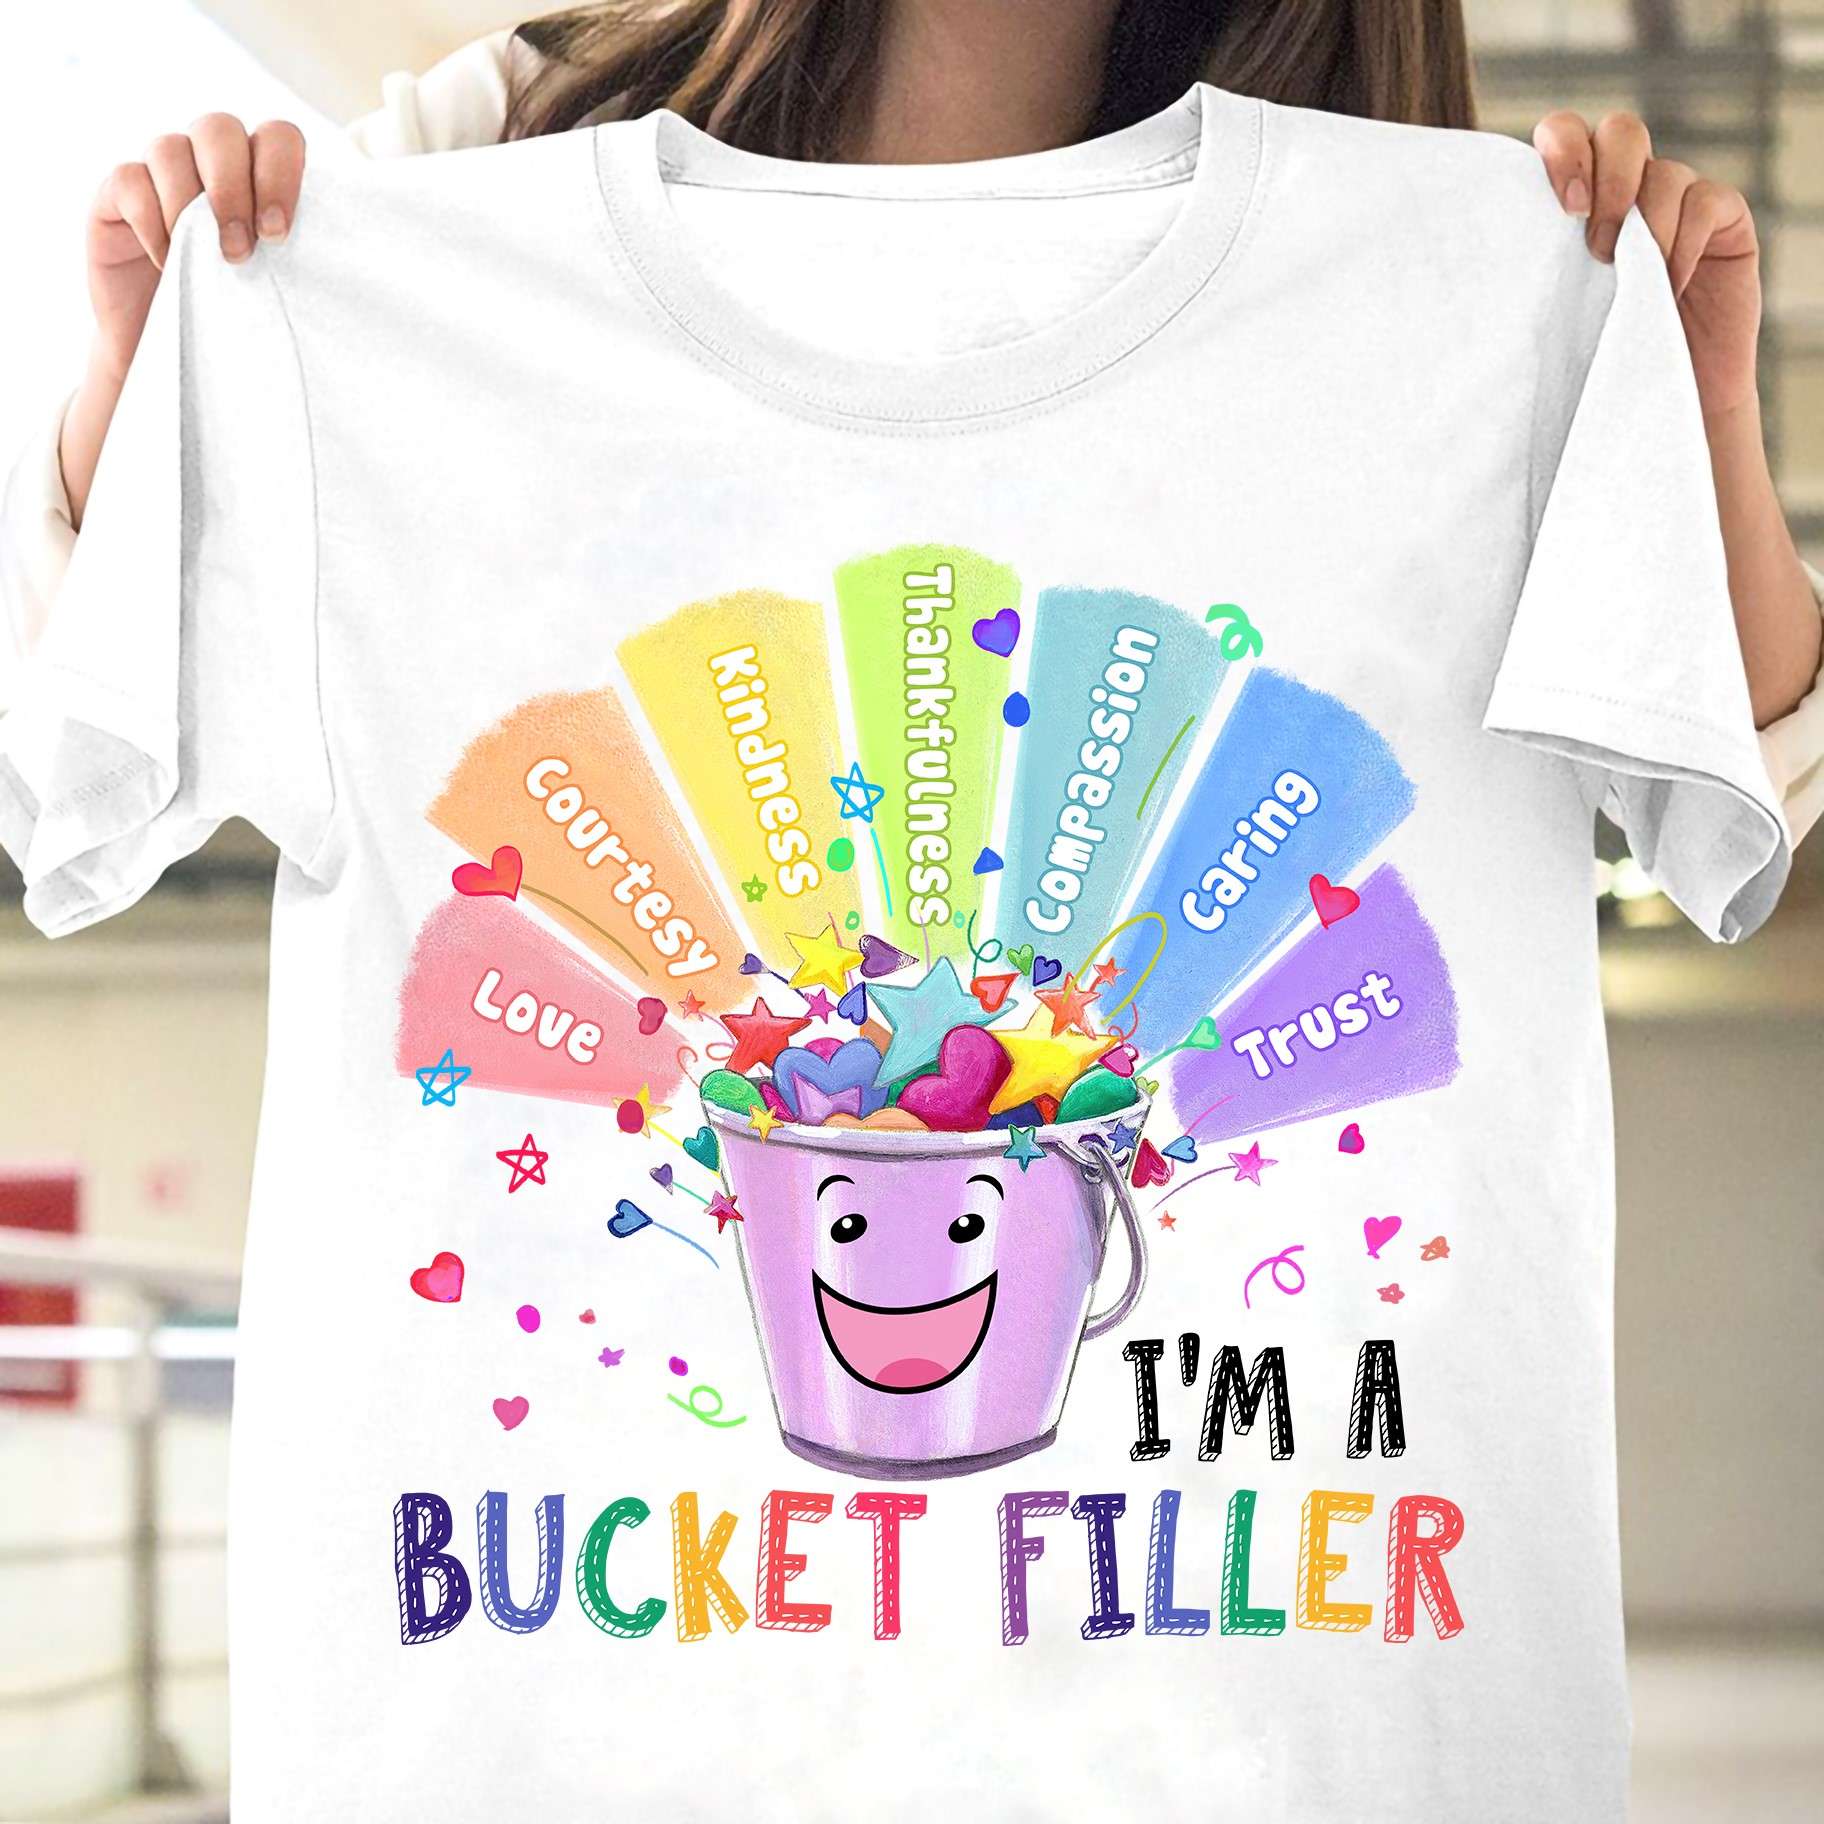 I'm a bucket filler - Funny bucket, gift for bucket filler